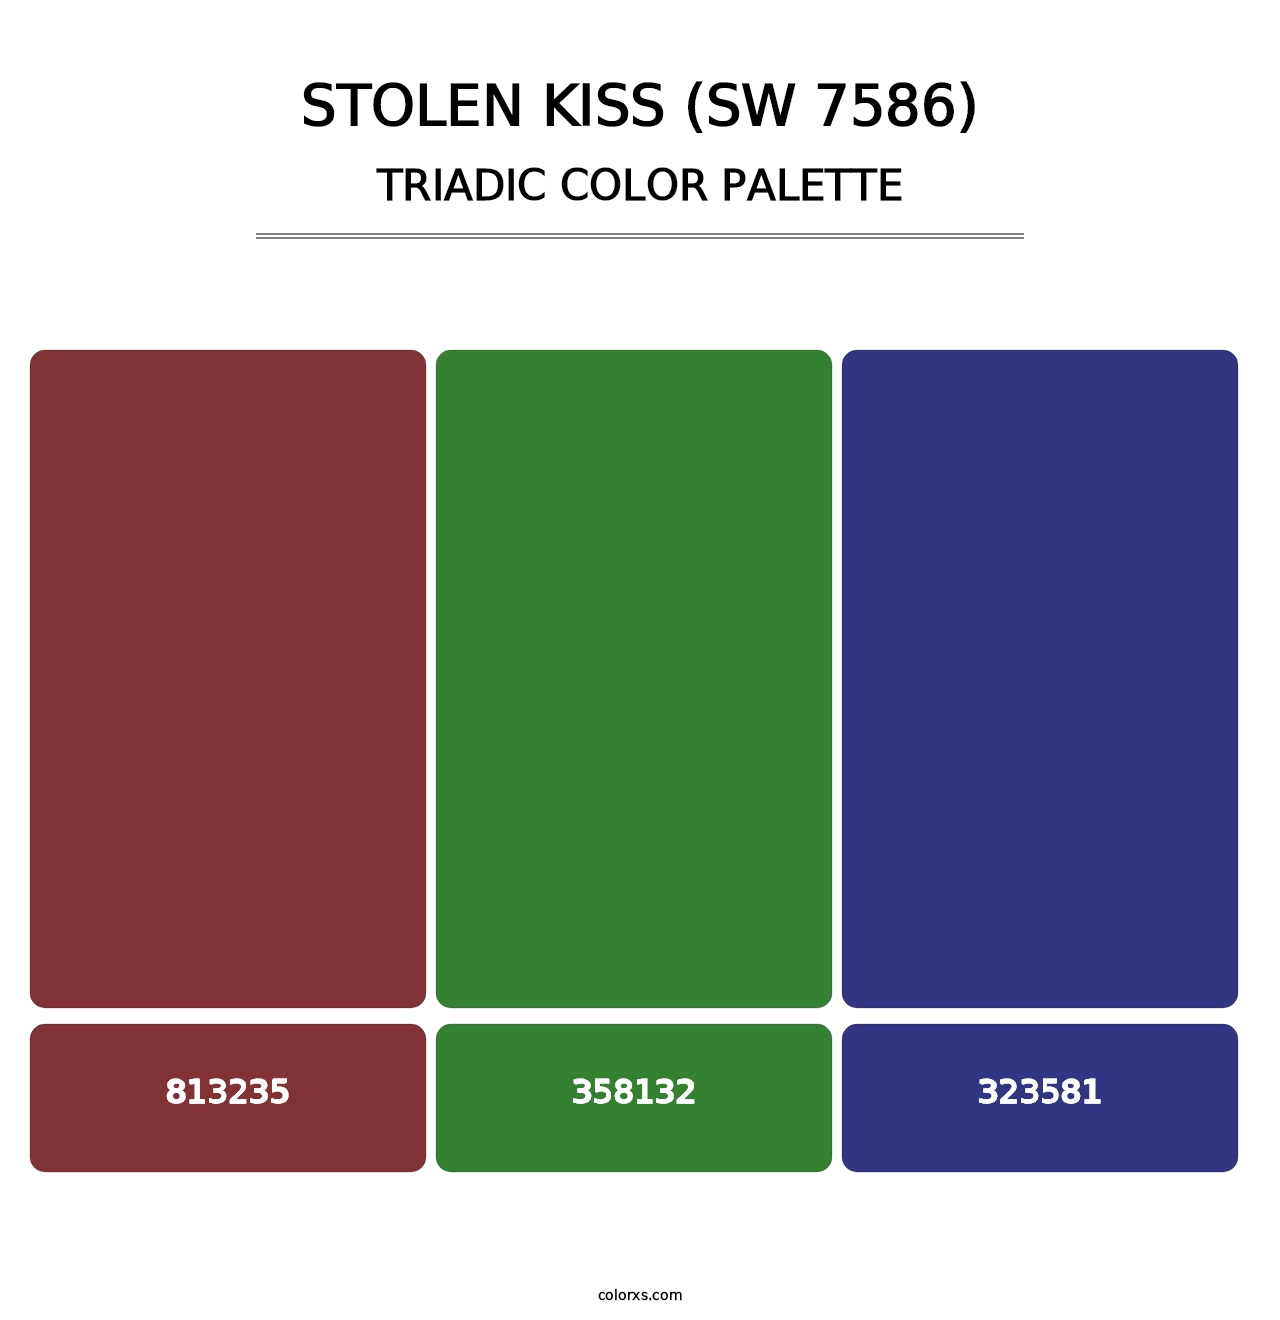 Stolen Kiss (SW 7586) - Triadic Color Palette